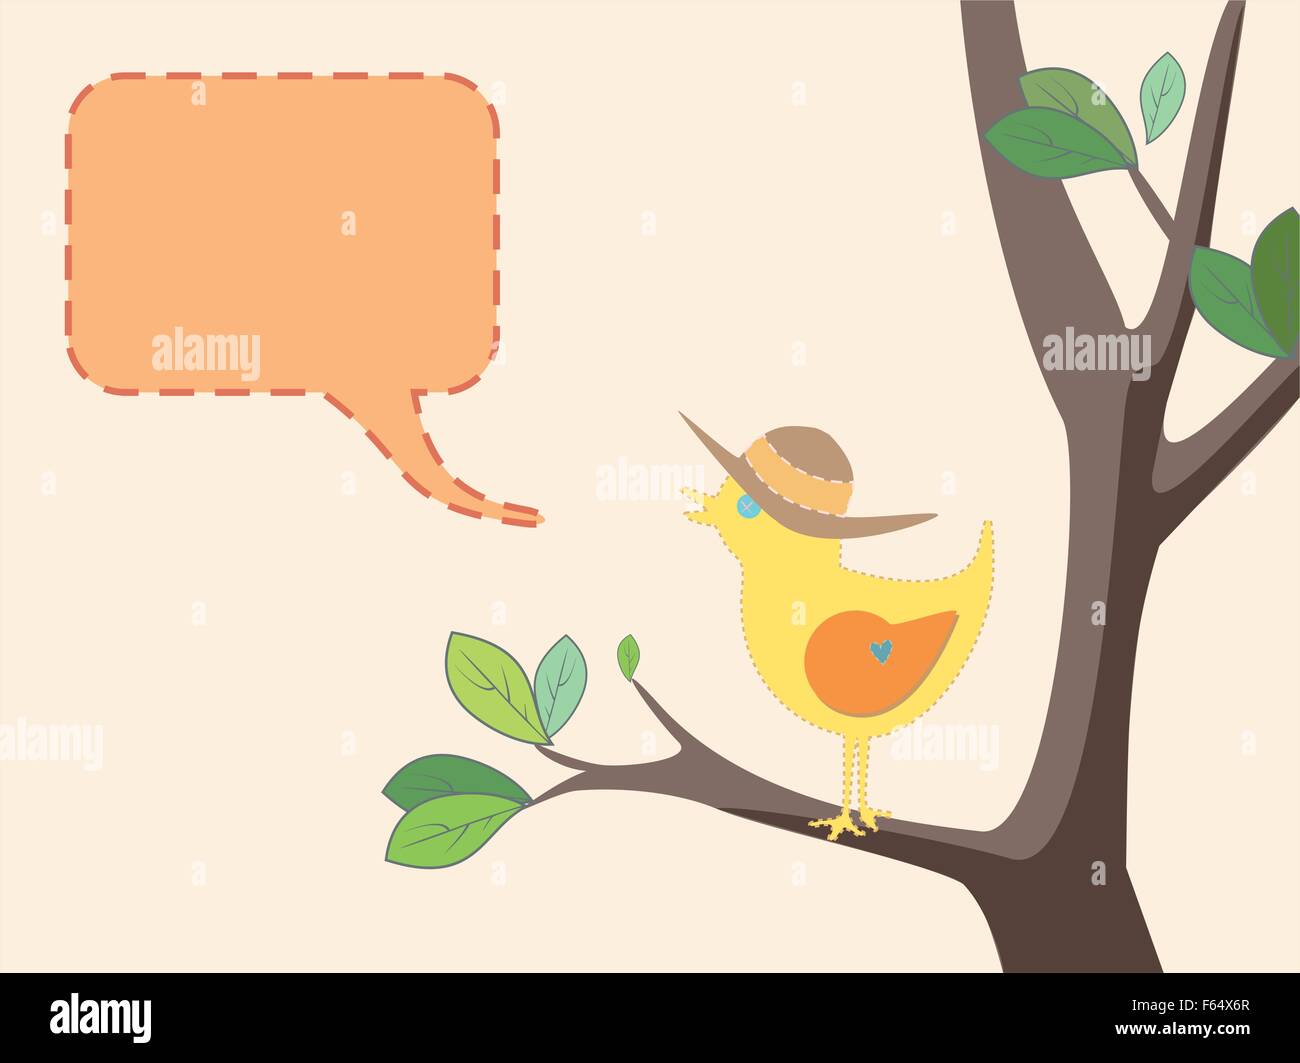 Saisonale Abbildung von einem niedlichen Vogel mit einem Sommerhut auf einem Baum mit grünen Blättern Stock Vektor